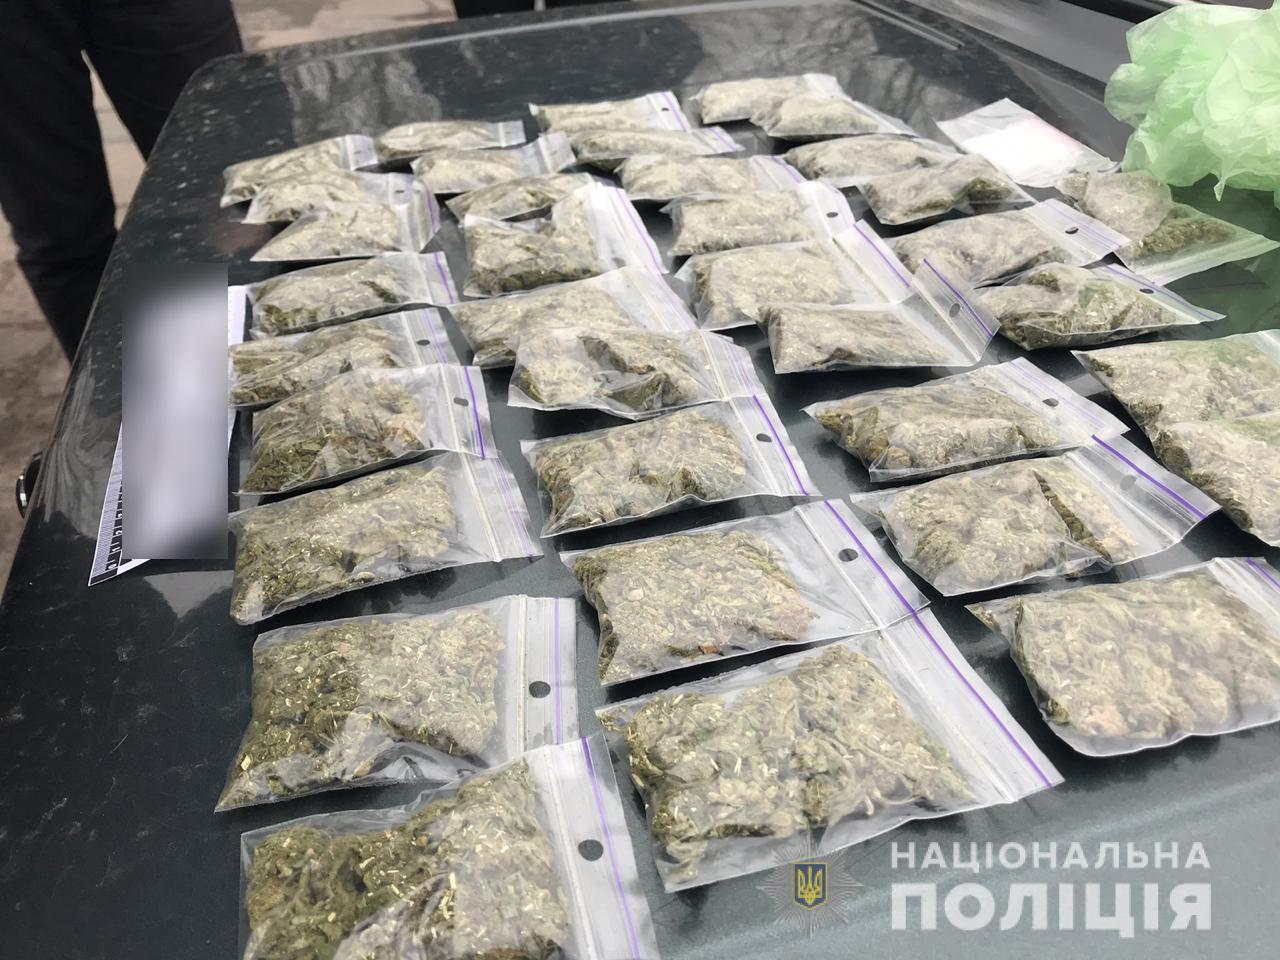 грамм марихуаны цена украина